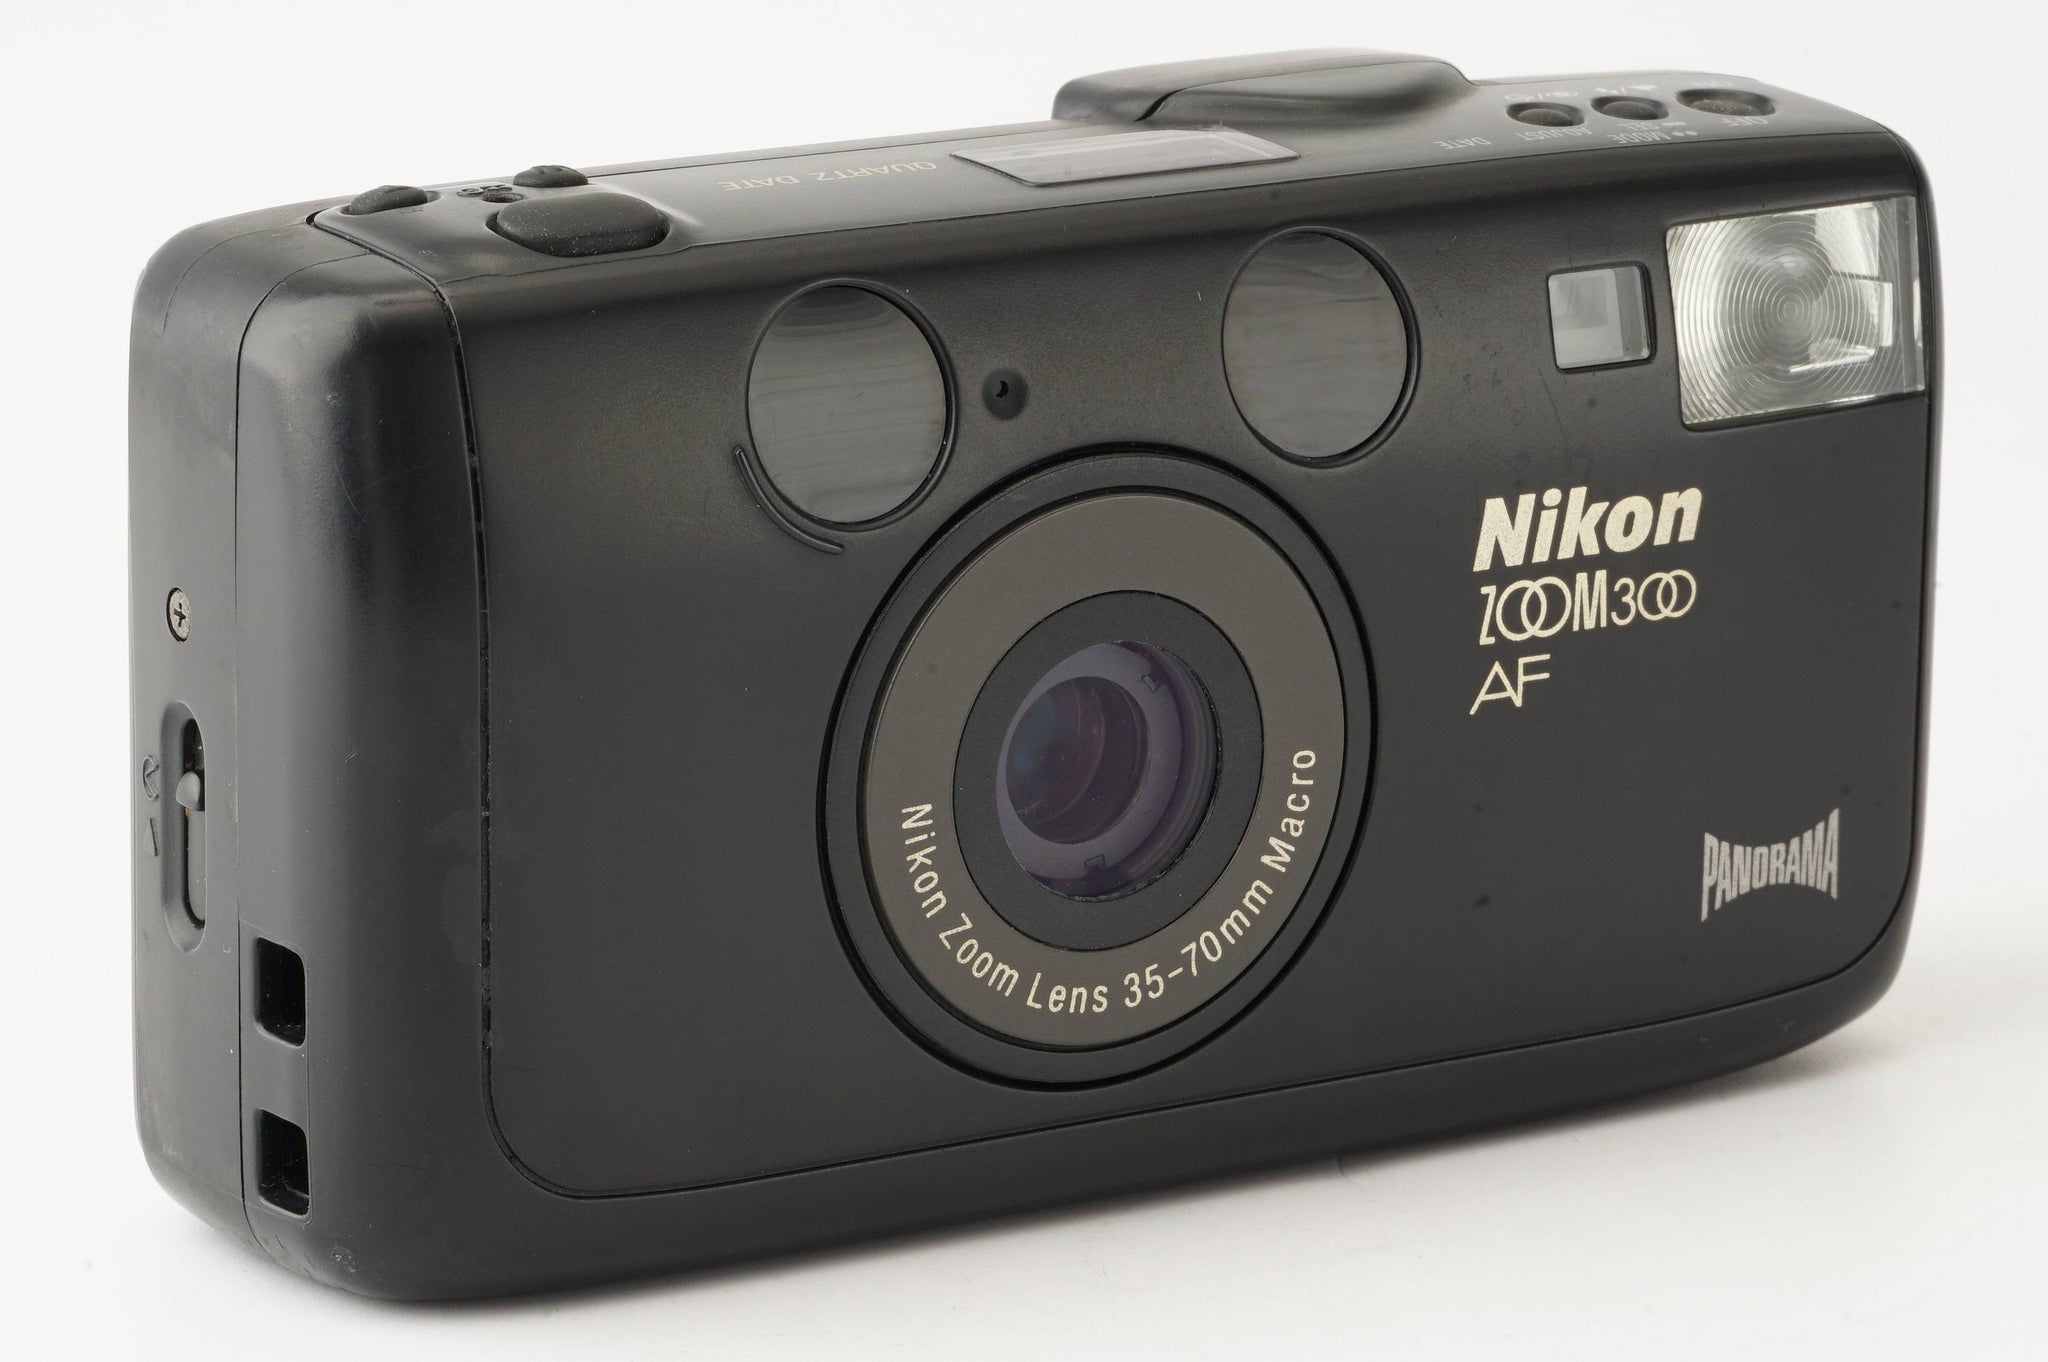 ニコン Nikon ZOOM300AF PANORAMA